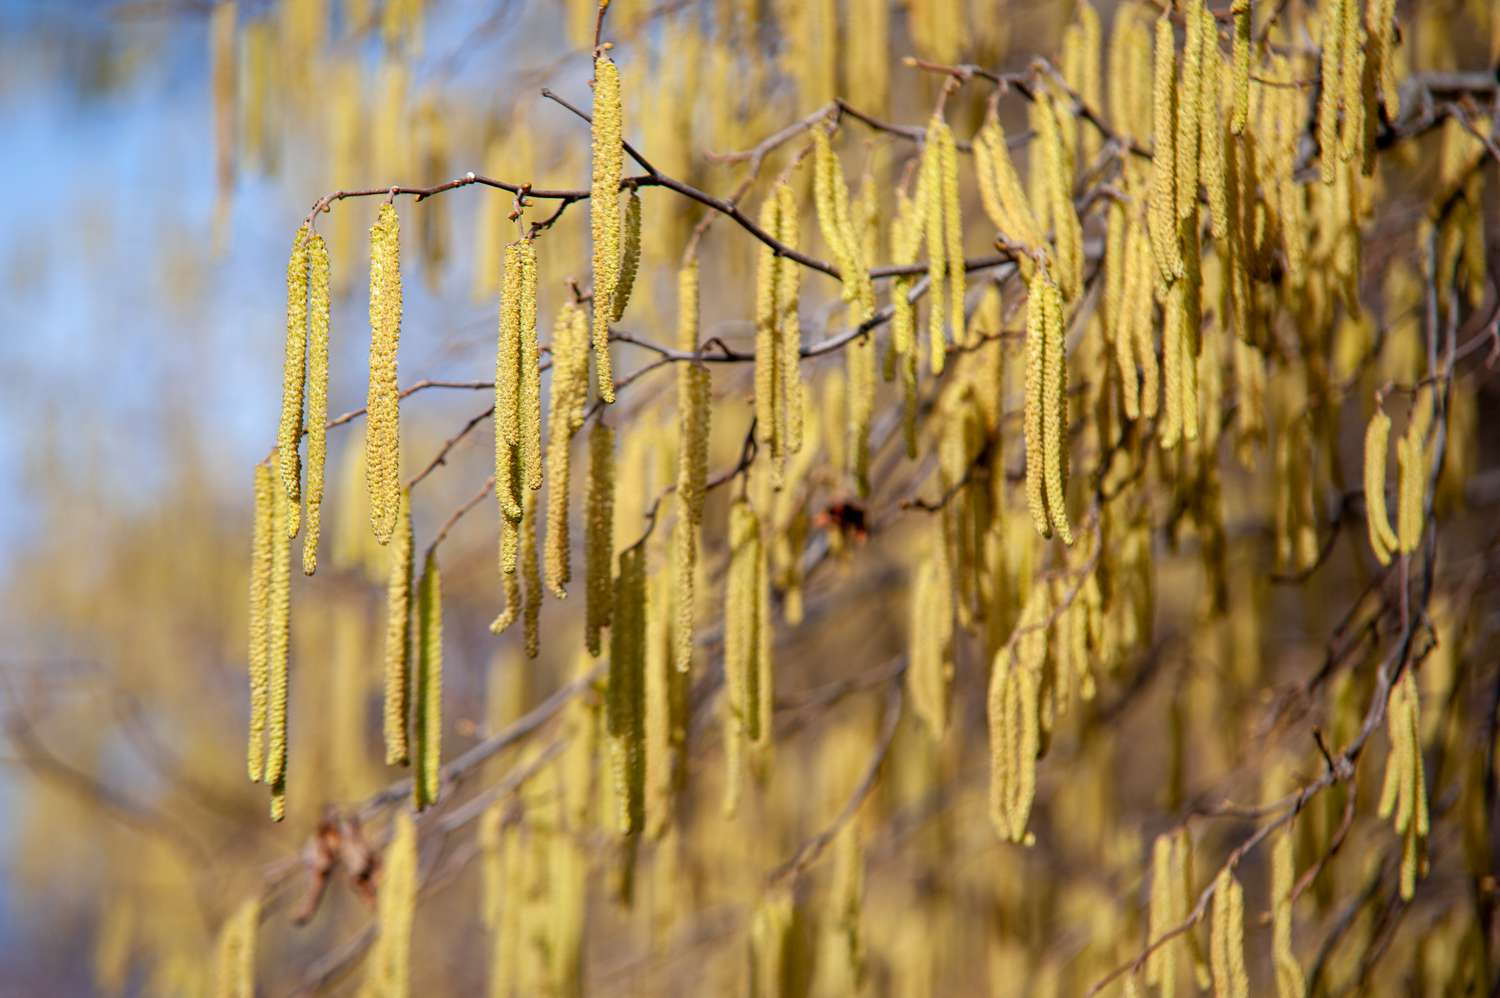 Haselnussbaumzweige mit gelben Haselnussblütenranken im Sonnenlicht